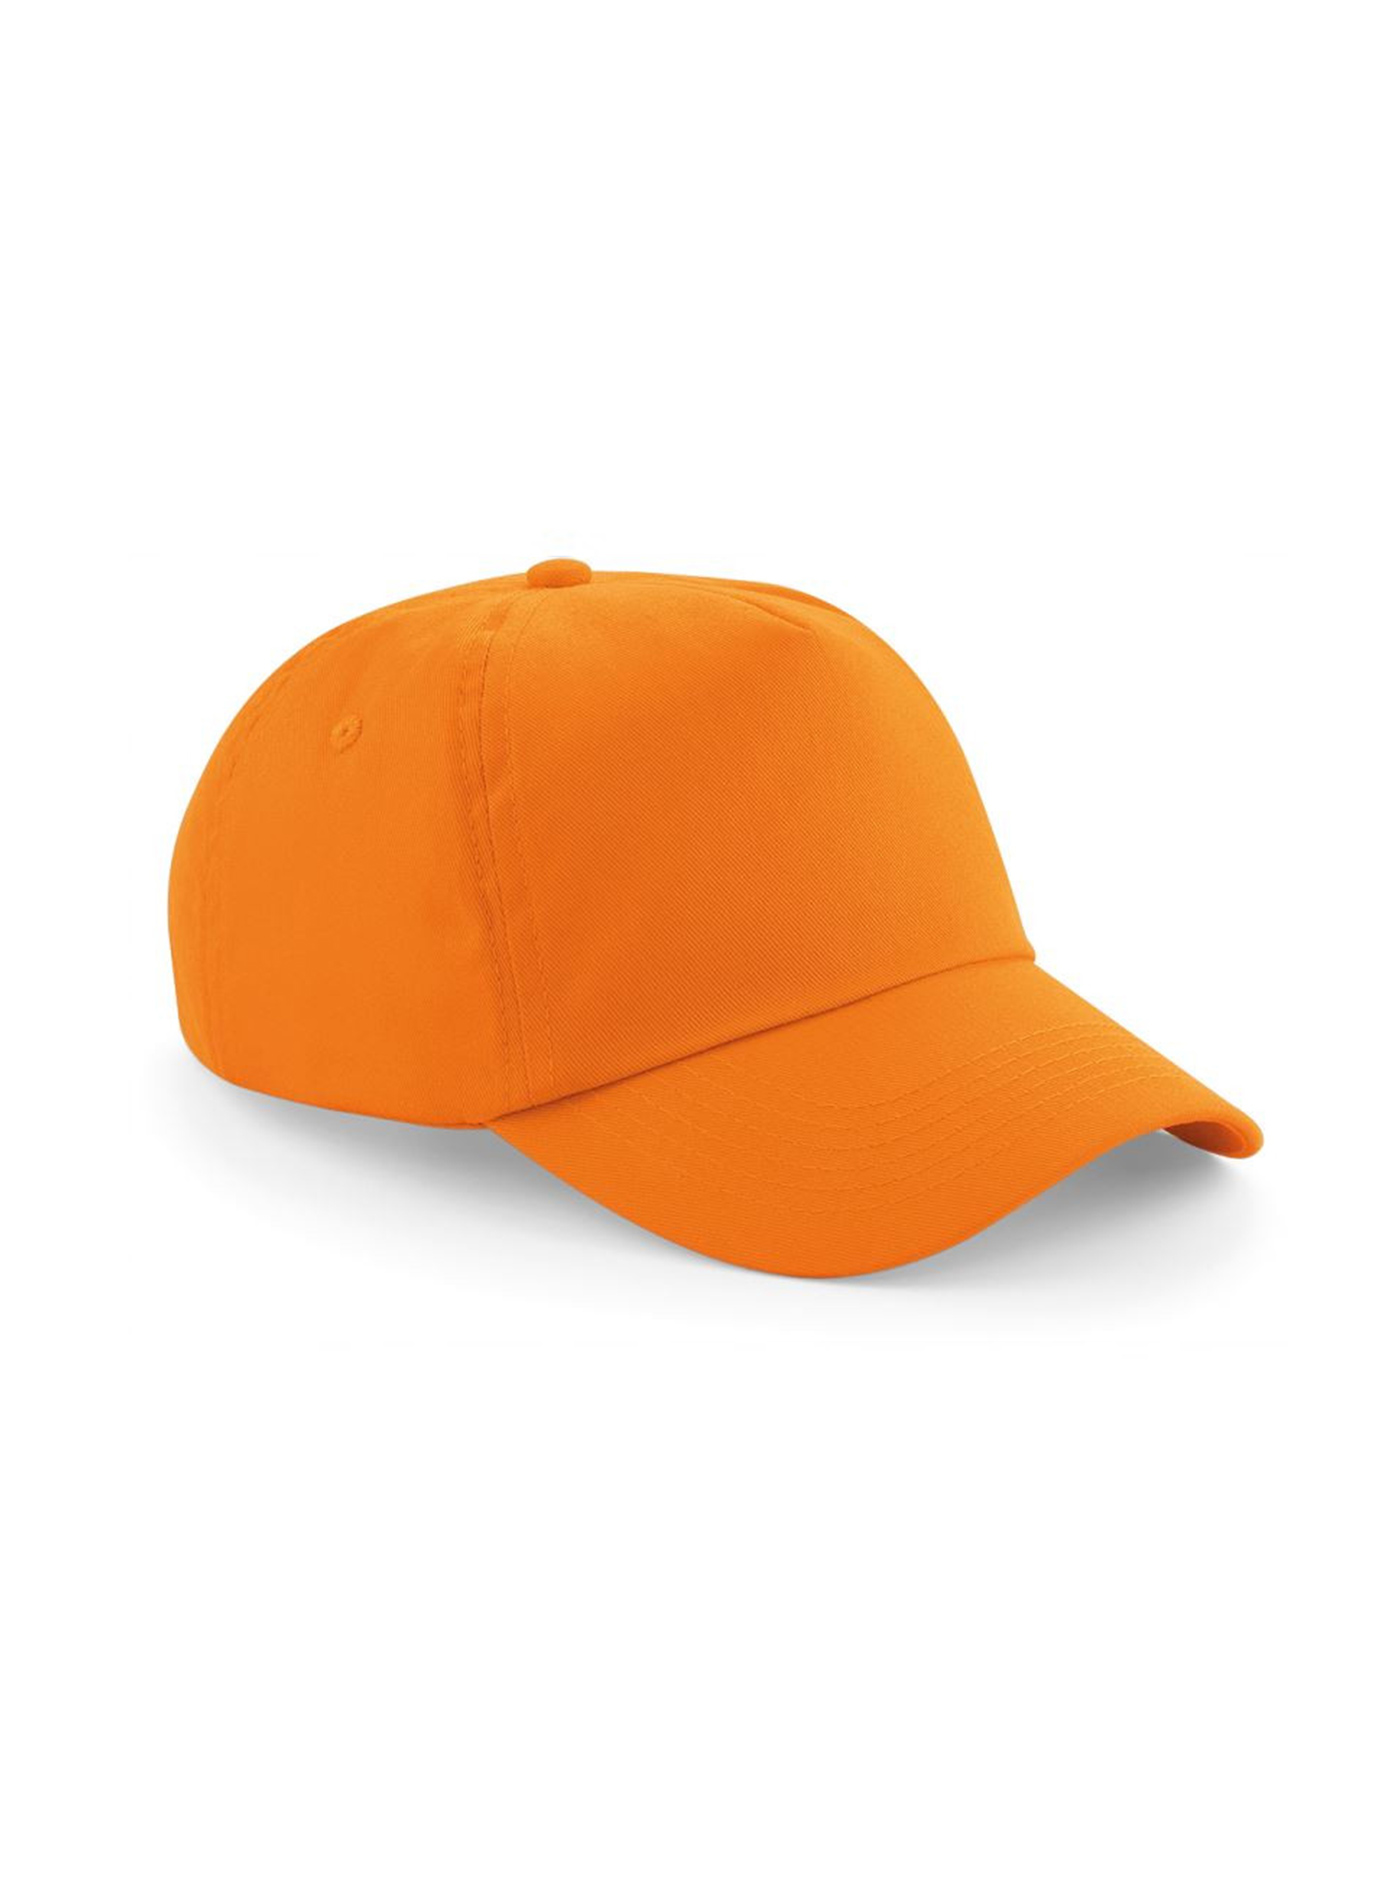 Kšiltovka Beechfield original - Neonová oranžová univerzal